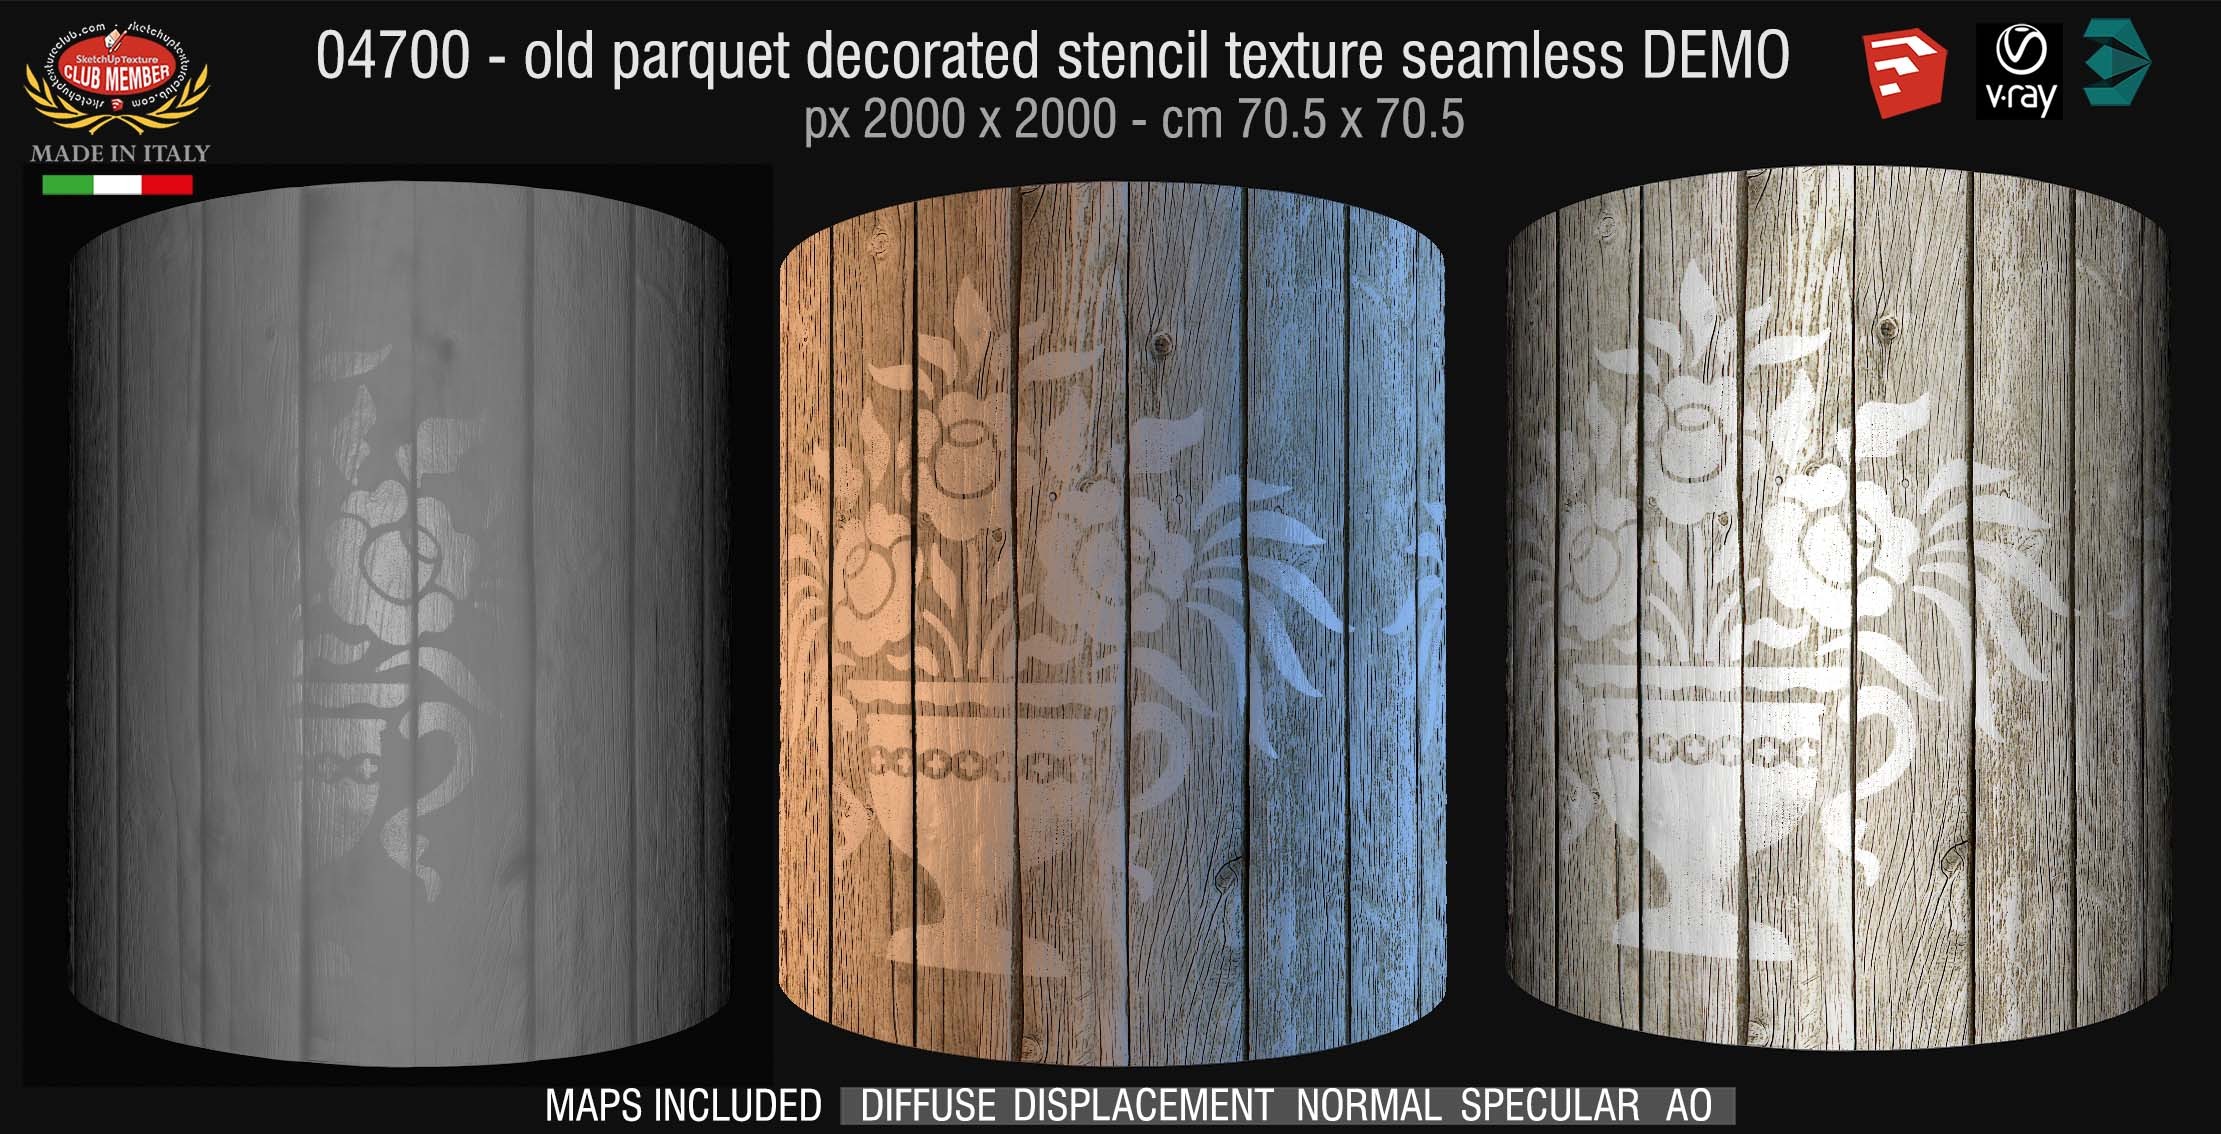 04700 HR Parquet decorated stencil texture seamless + maps DEMO